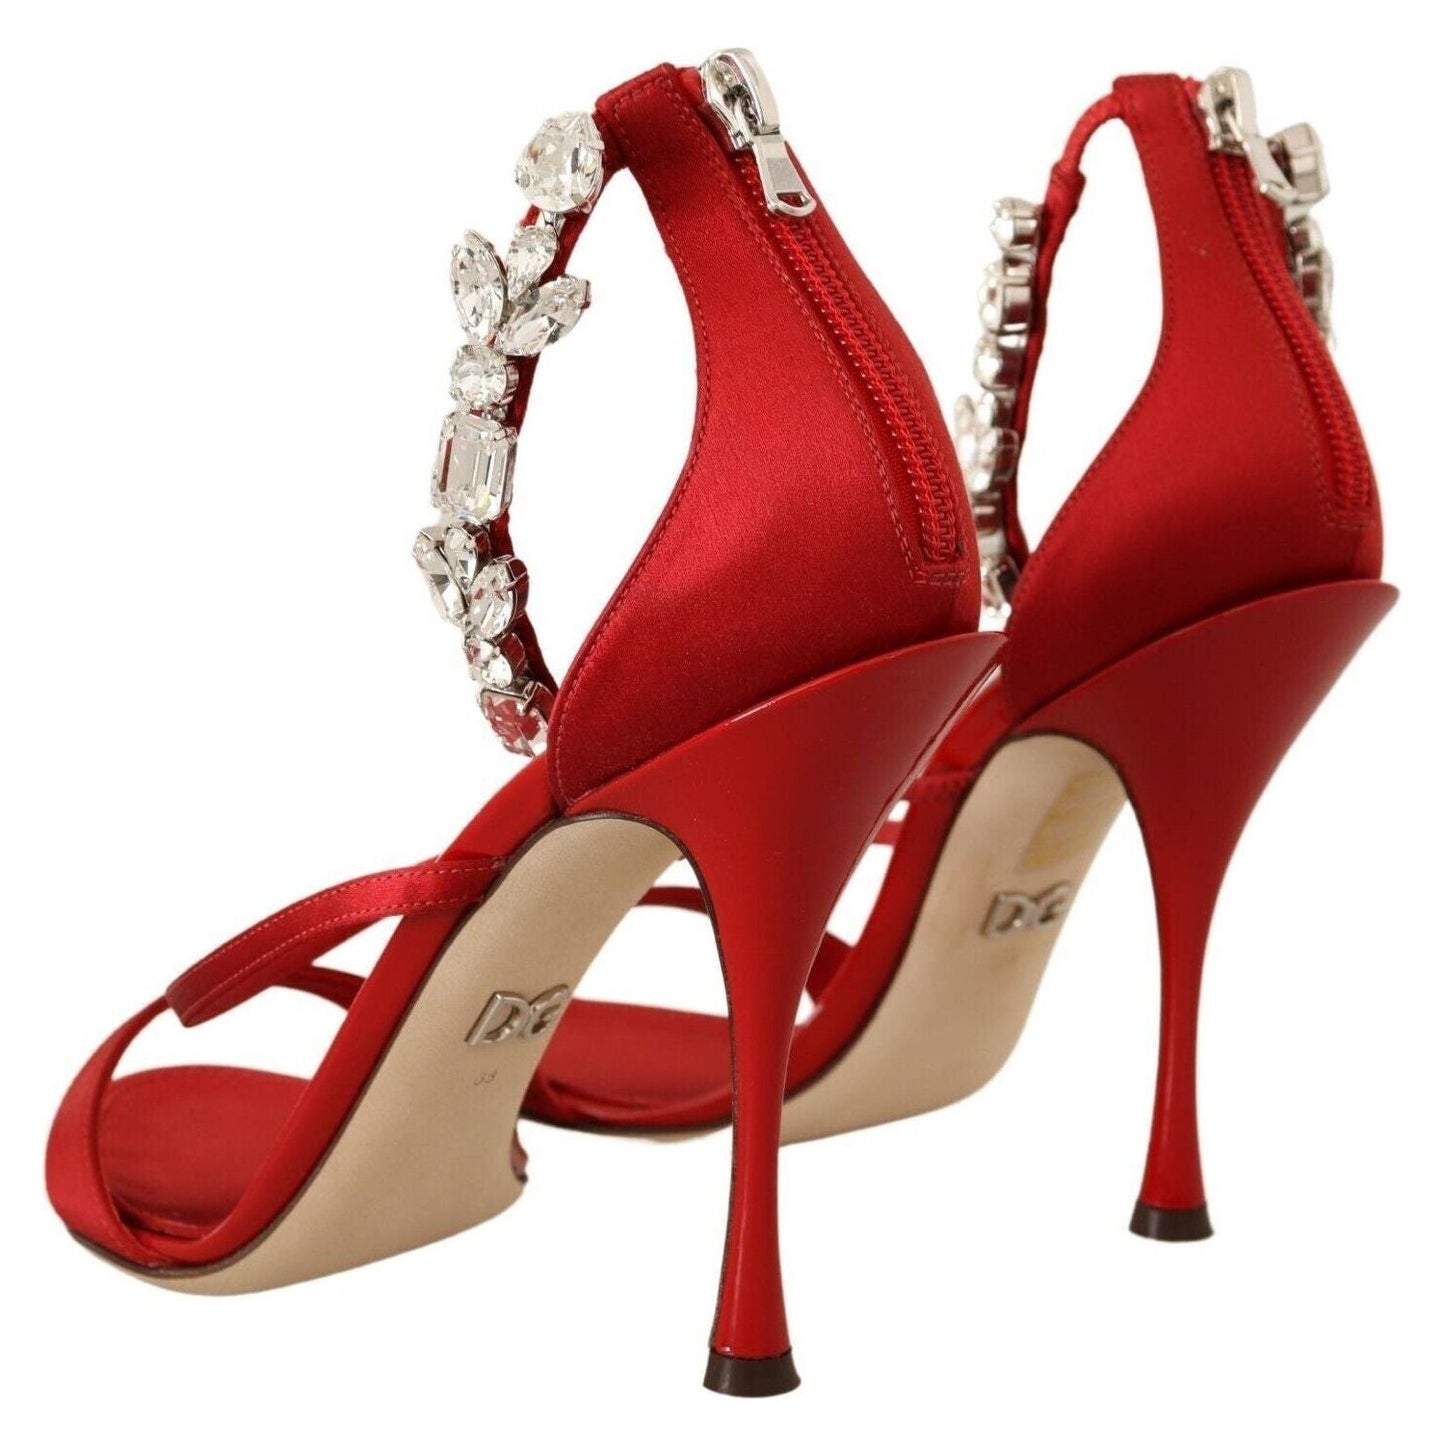 Dolce & Gabbana Red Crystal-Embellished Heel Sandals Heeled Sandals red-satin-crystals-sandals-keira-heels-shoes